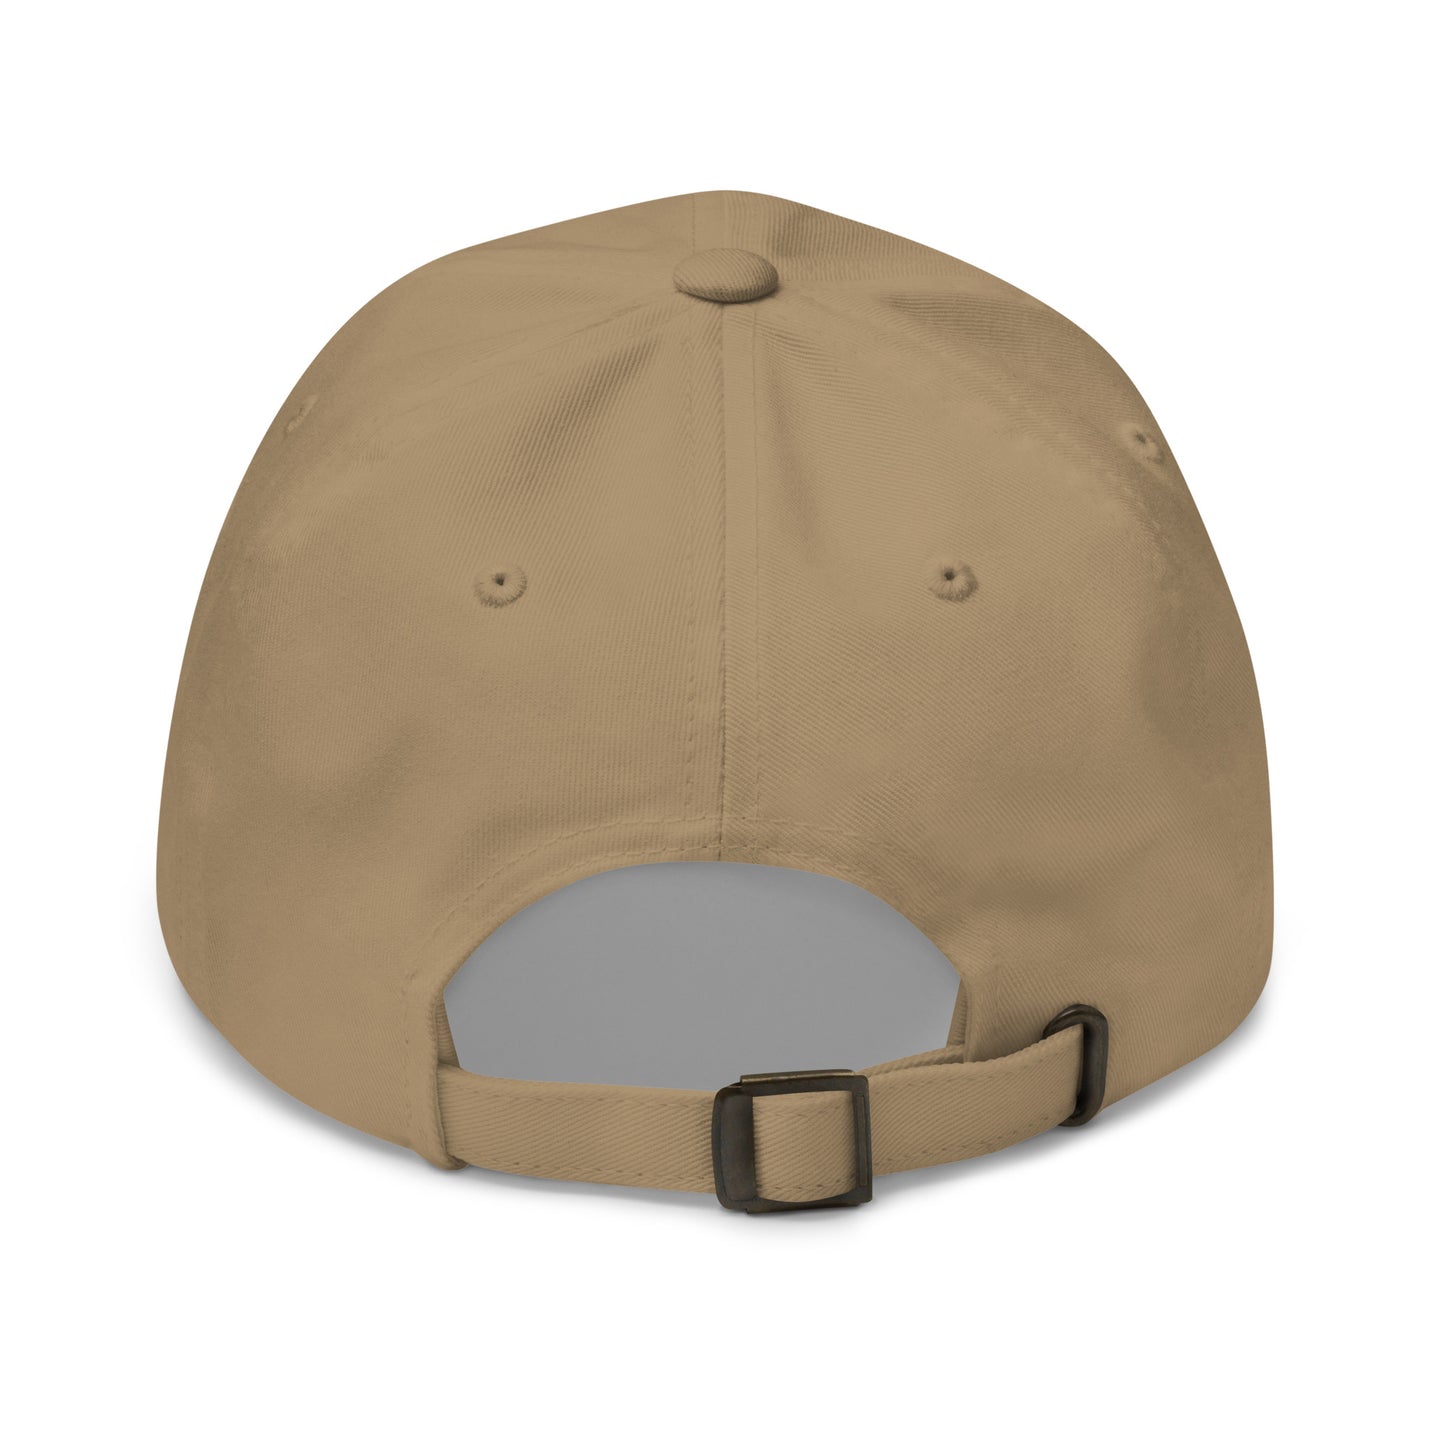 SLICE - Golf cap